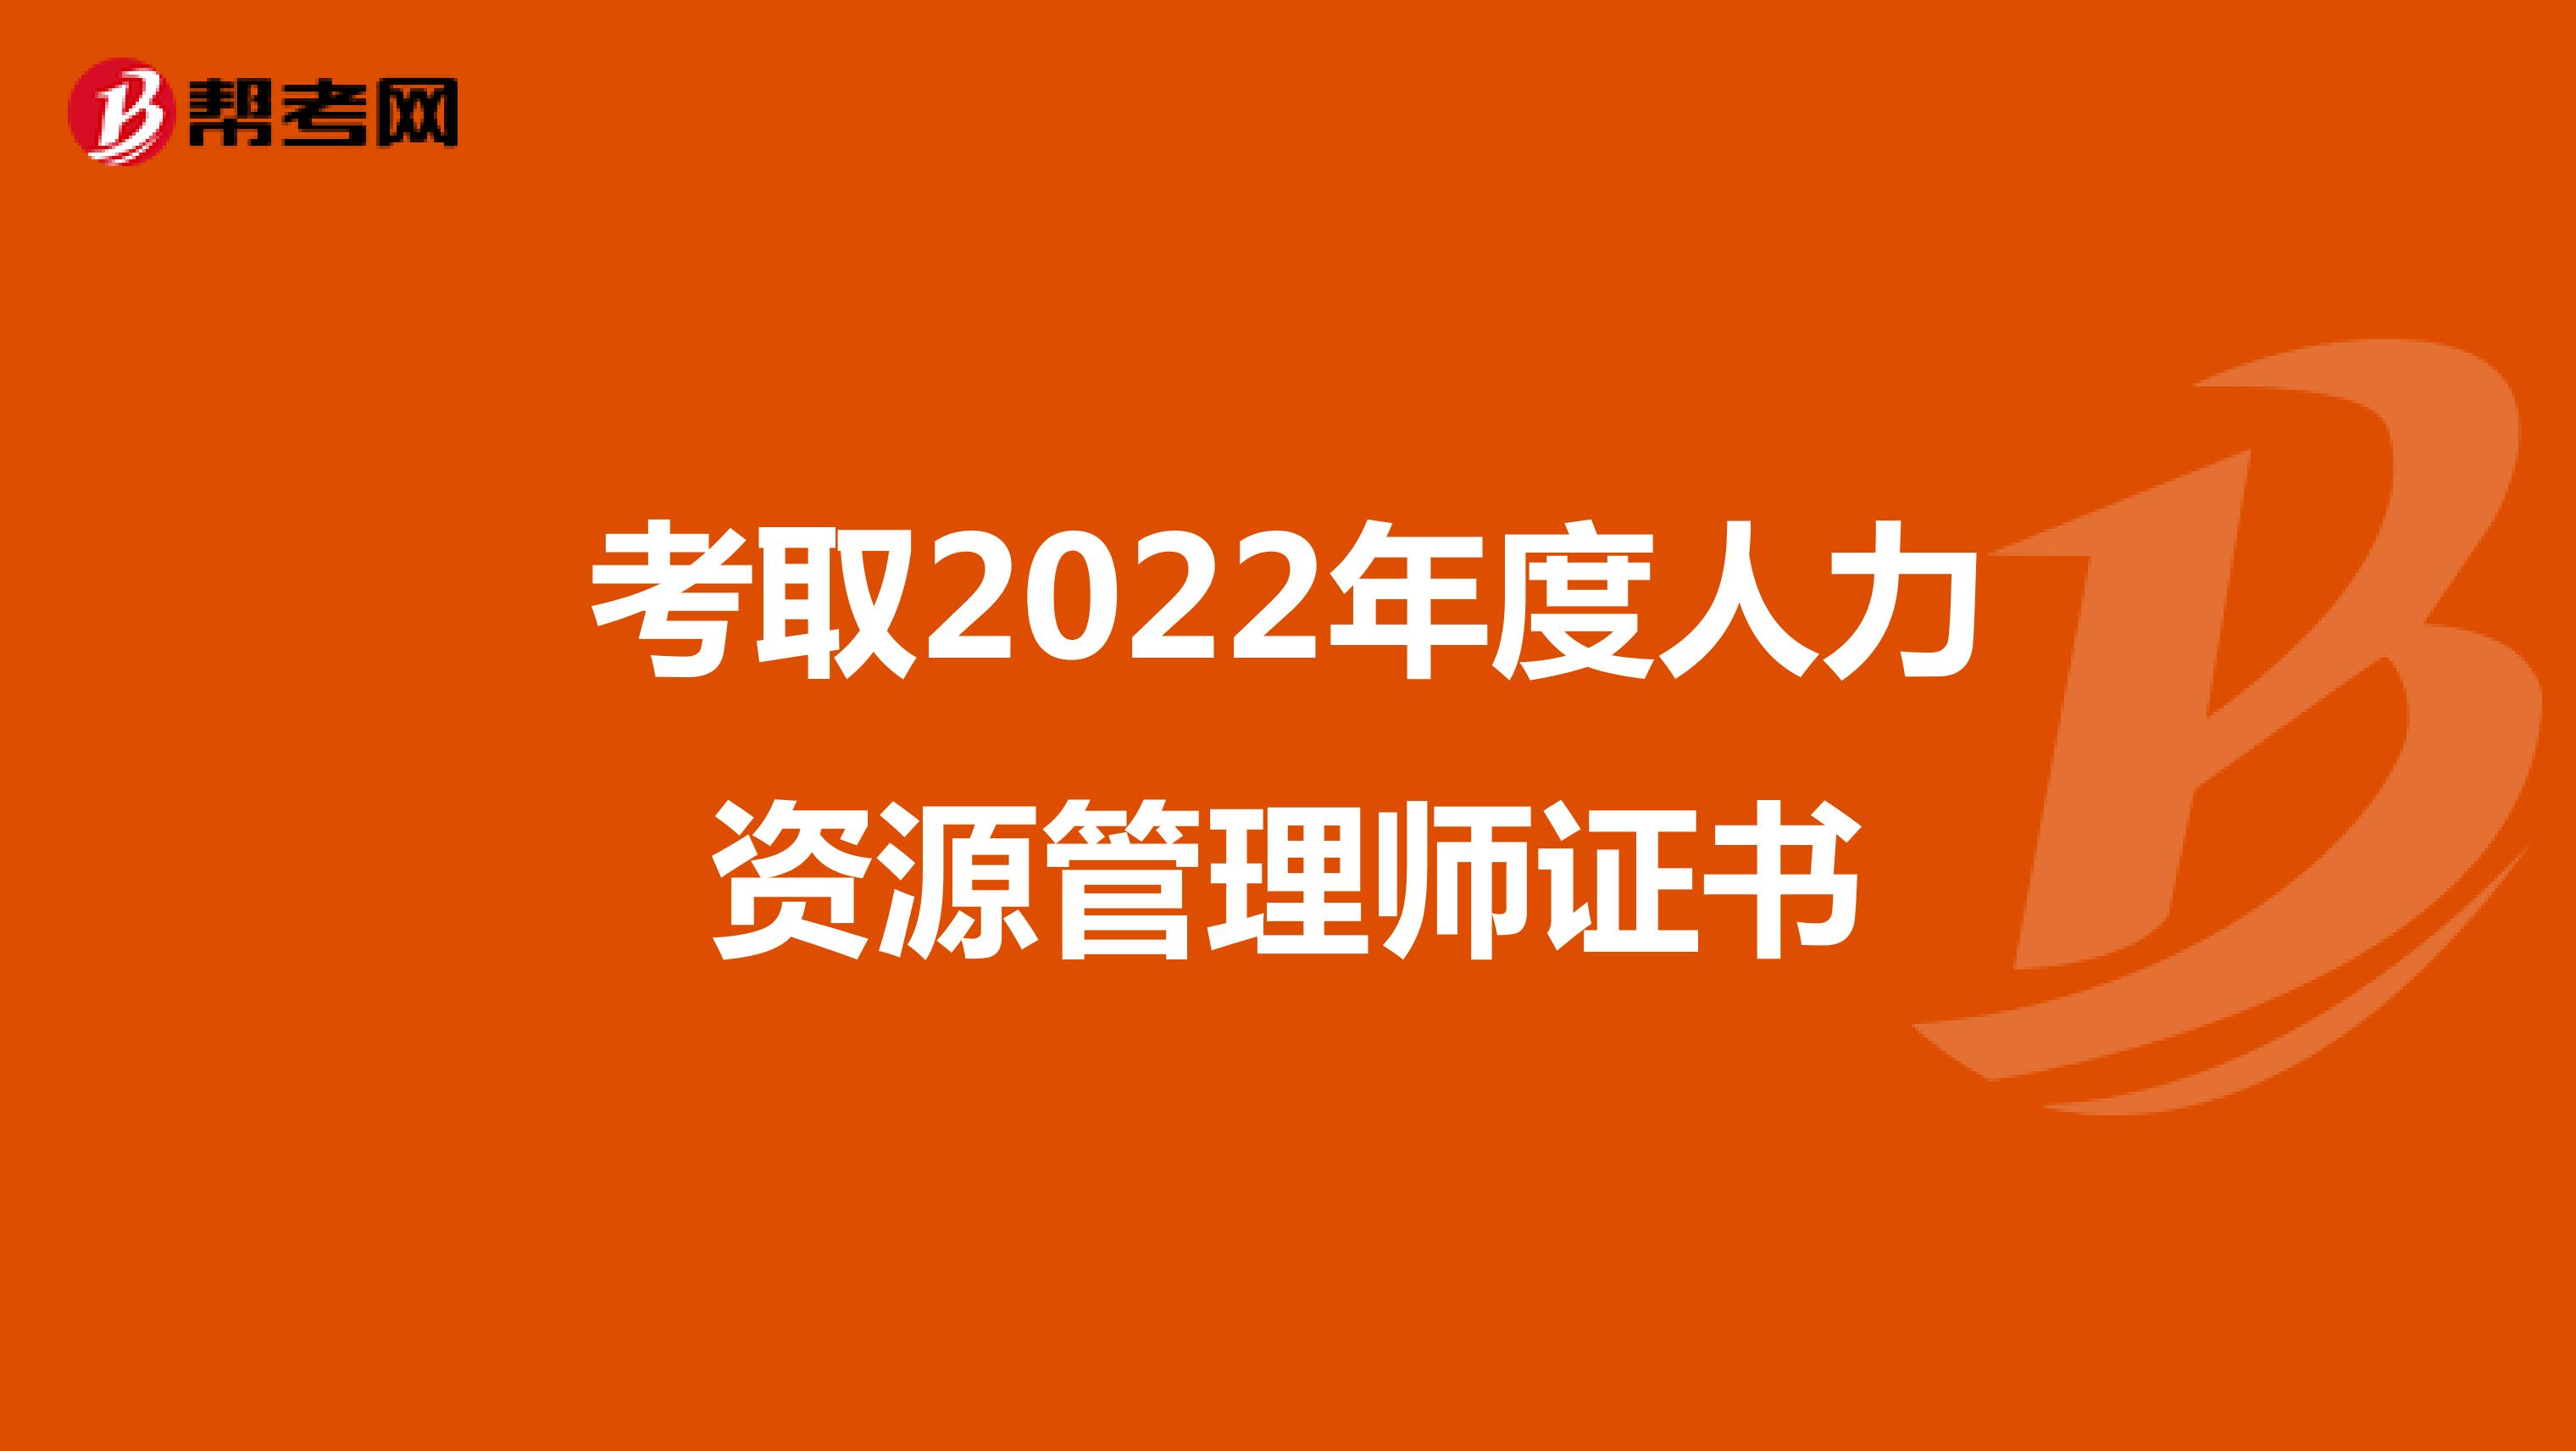 考取2022年度人力资源管理师证书